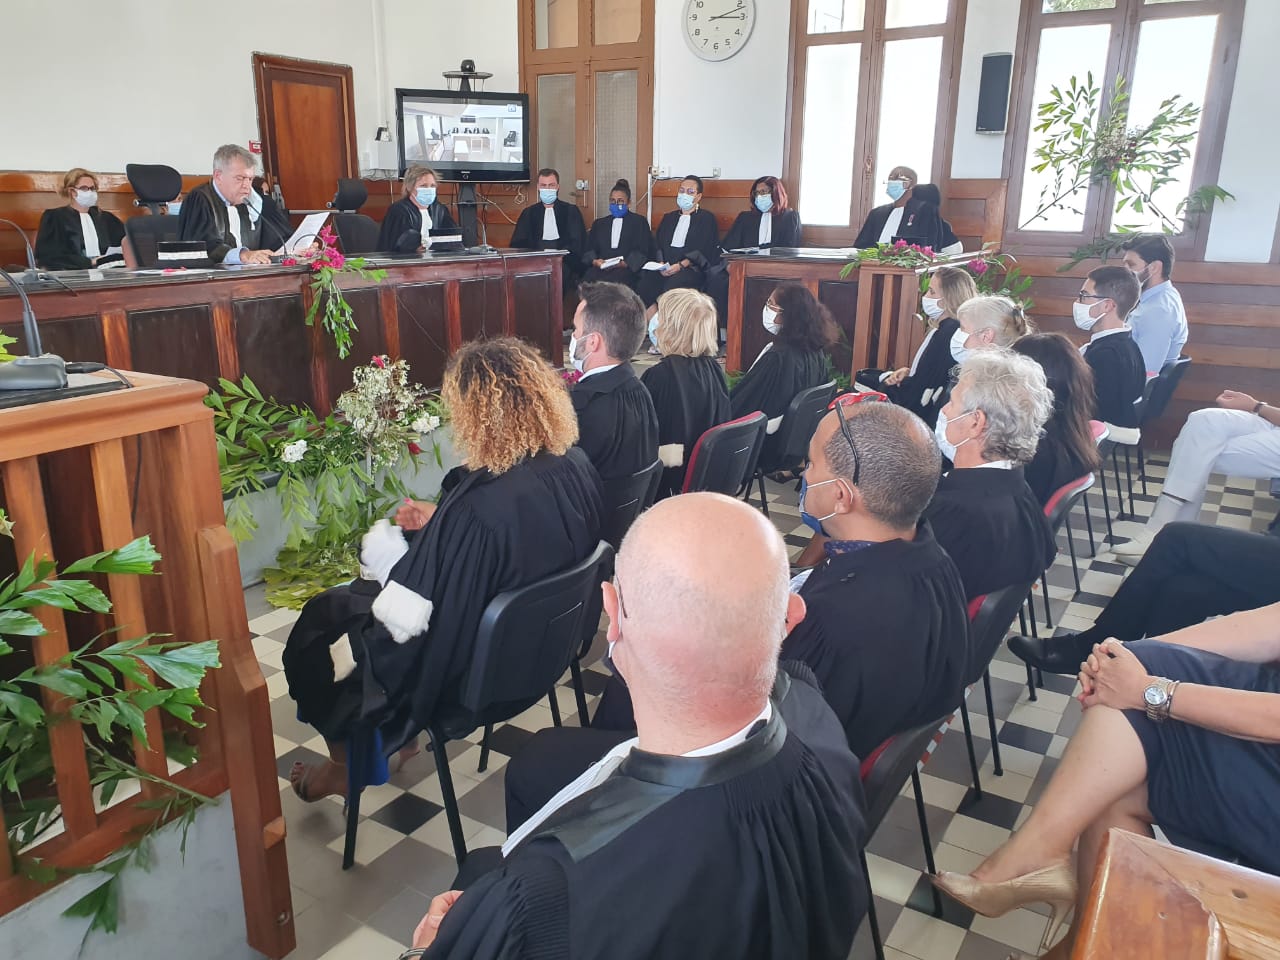     Le tribunal judiciaire de Basse-Terre a fait sa rentrée 

